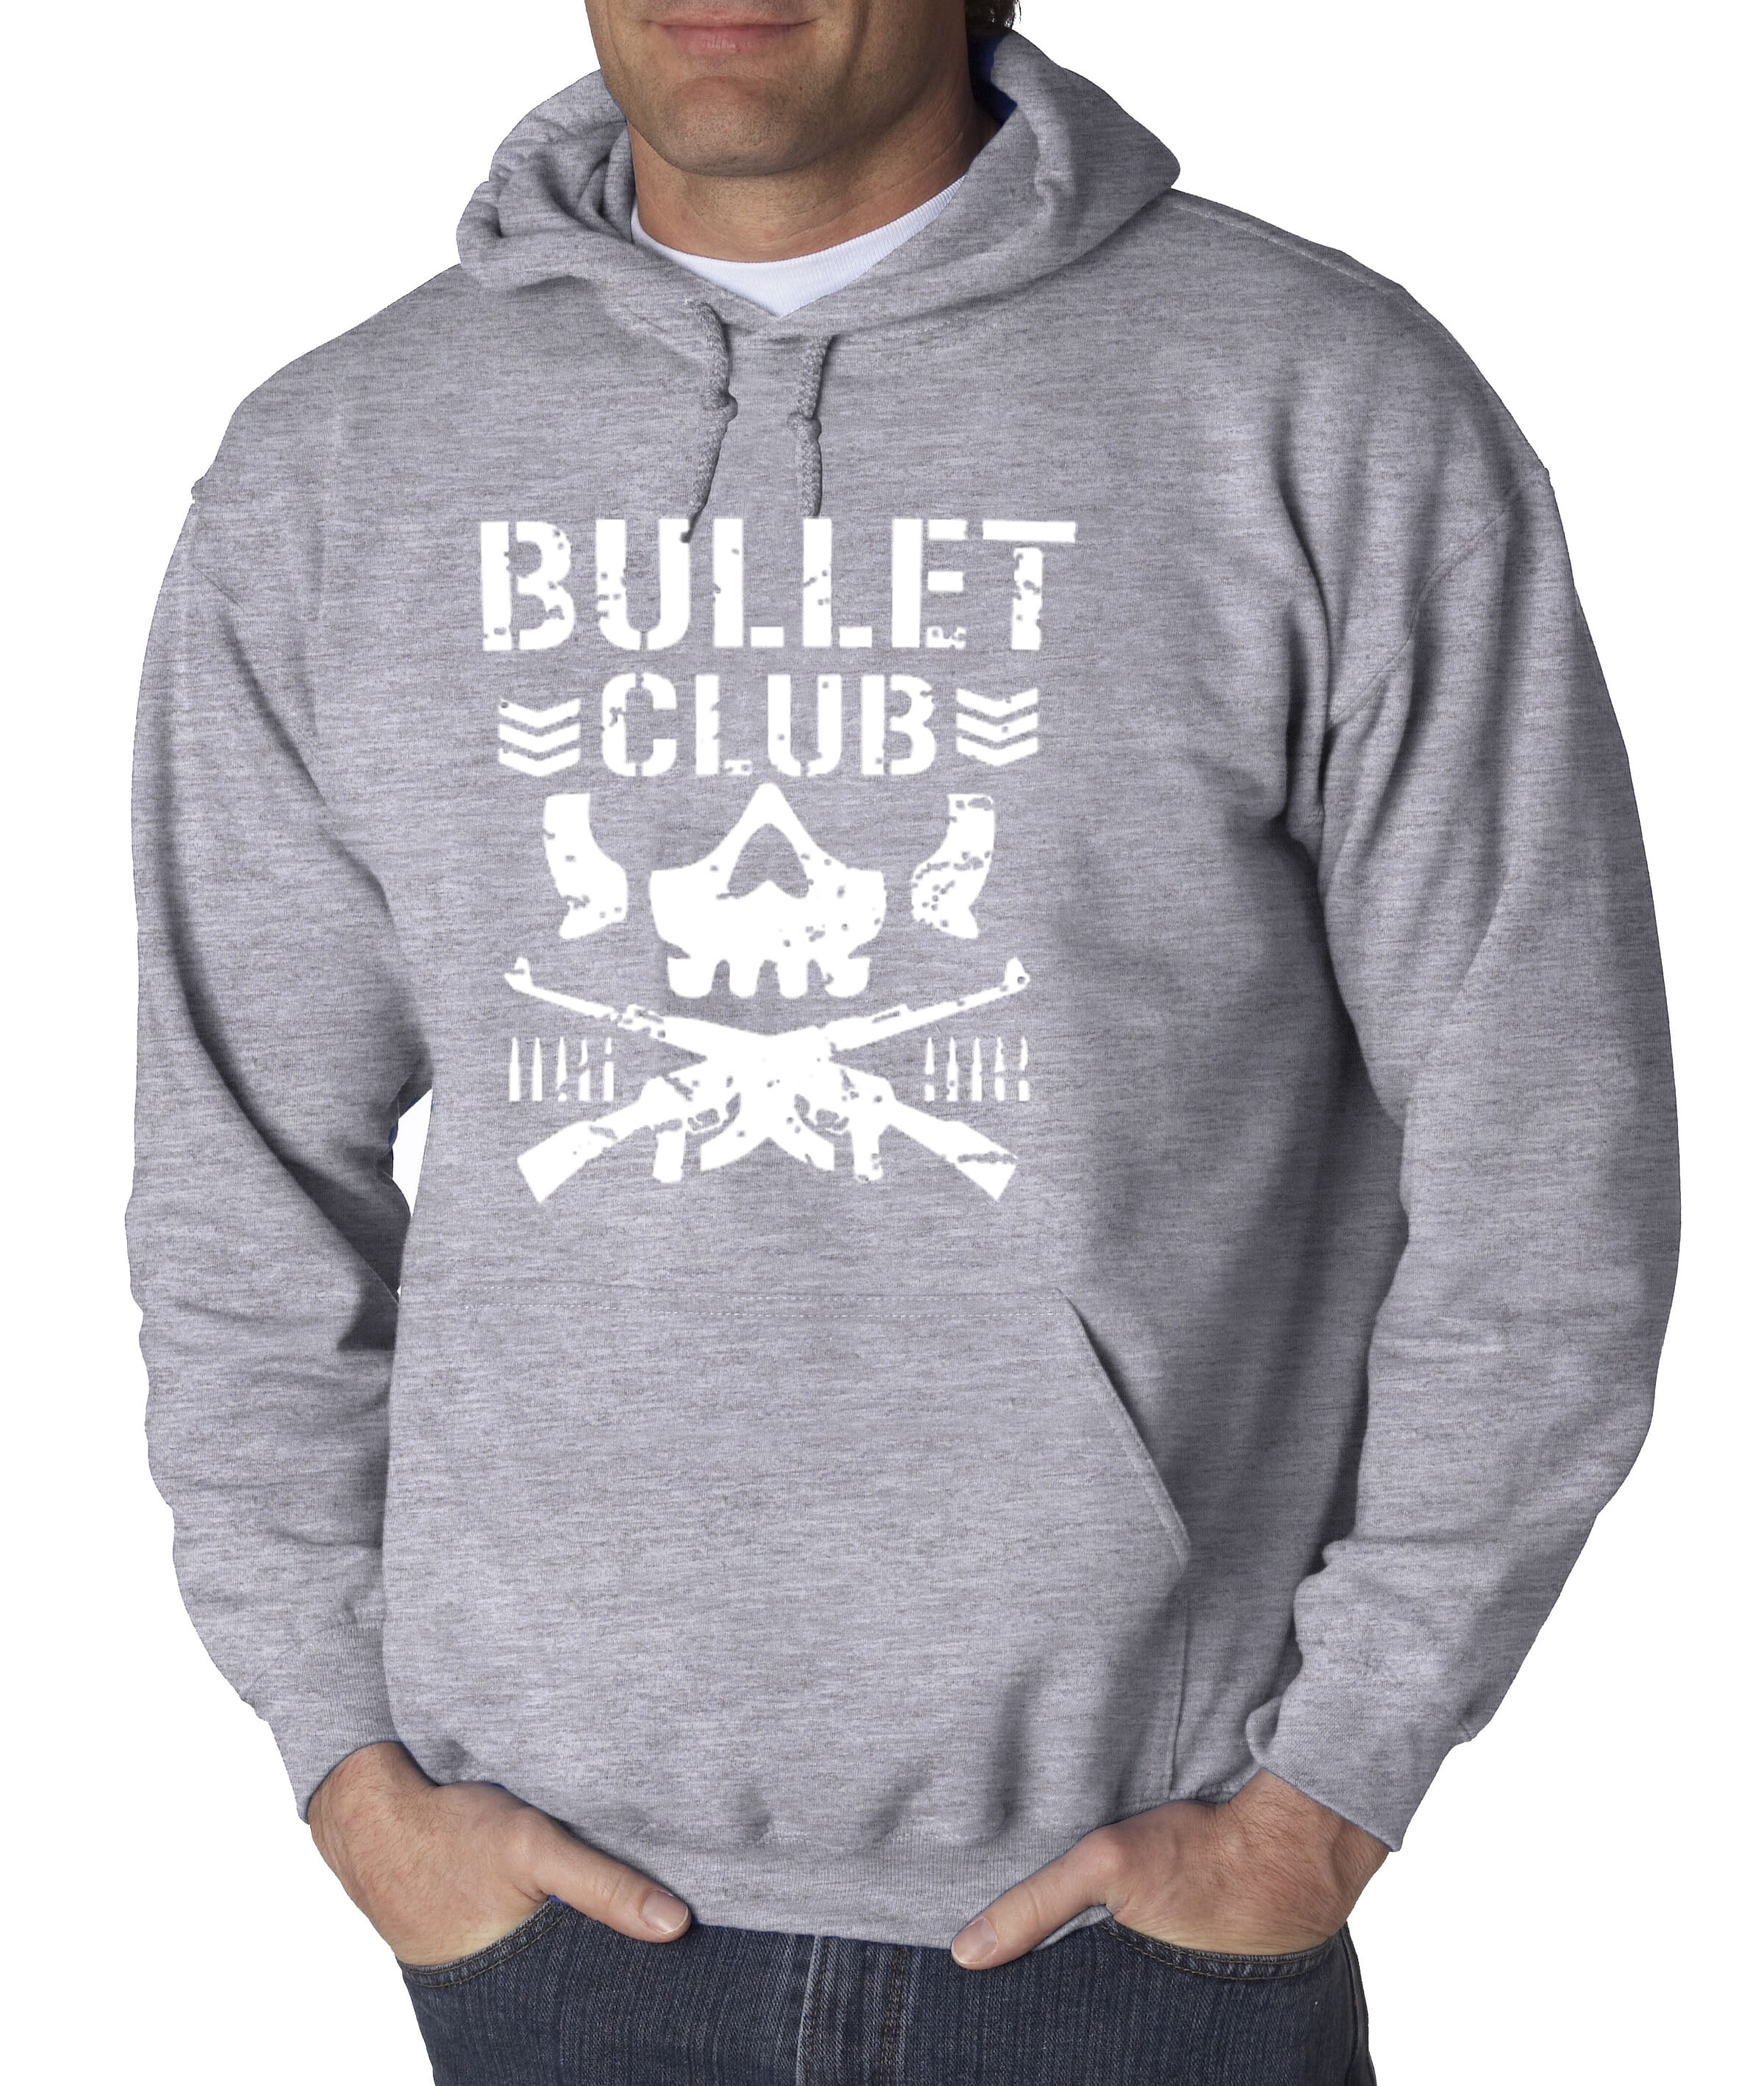 Hoodie Bullet Club Skull Soldier Japan Pro Wrestling New Way 786 - roblox bullet club jacket